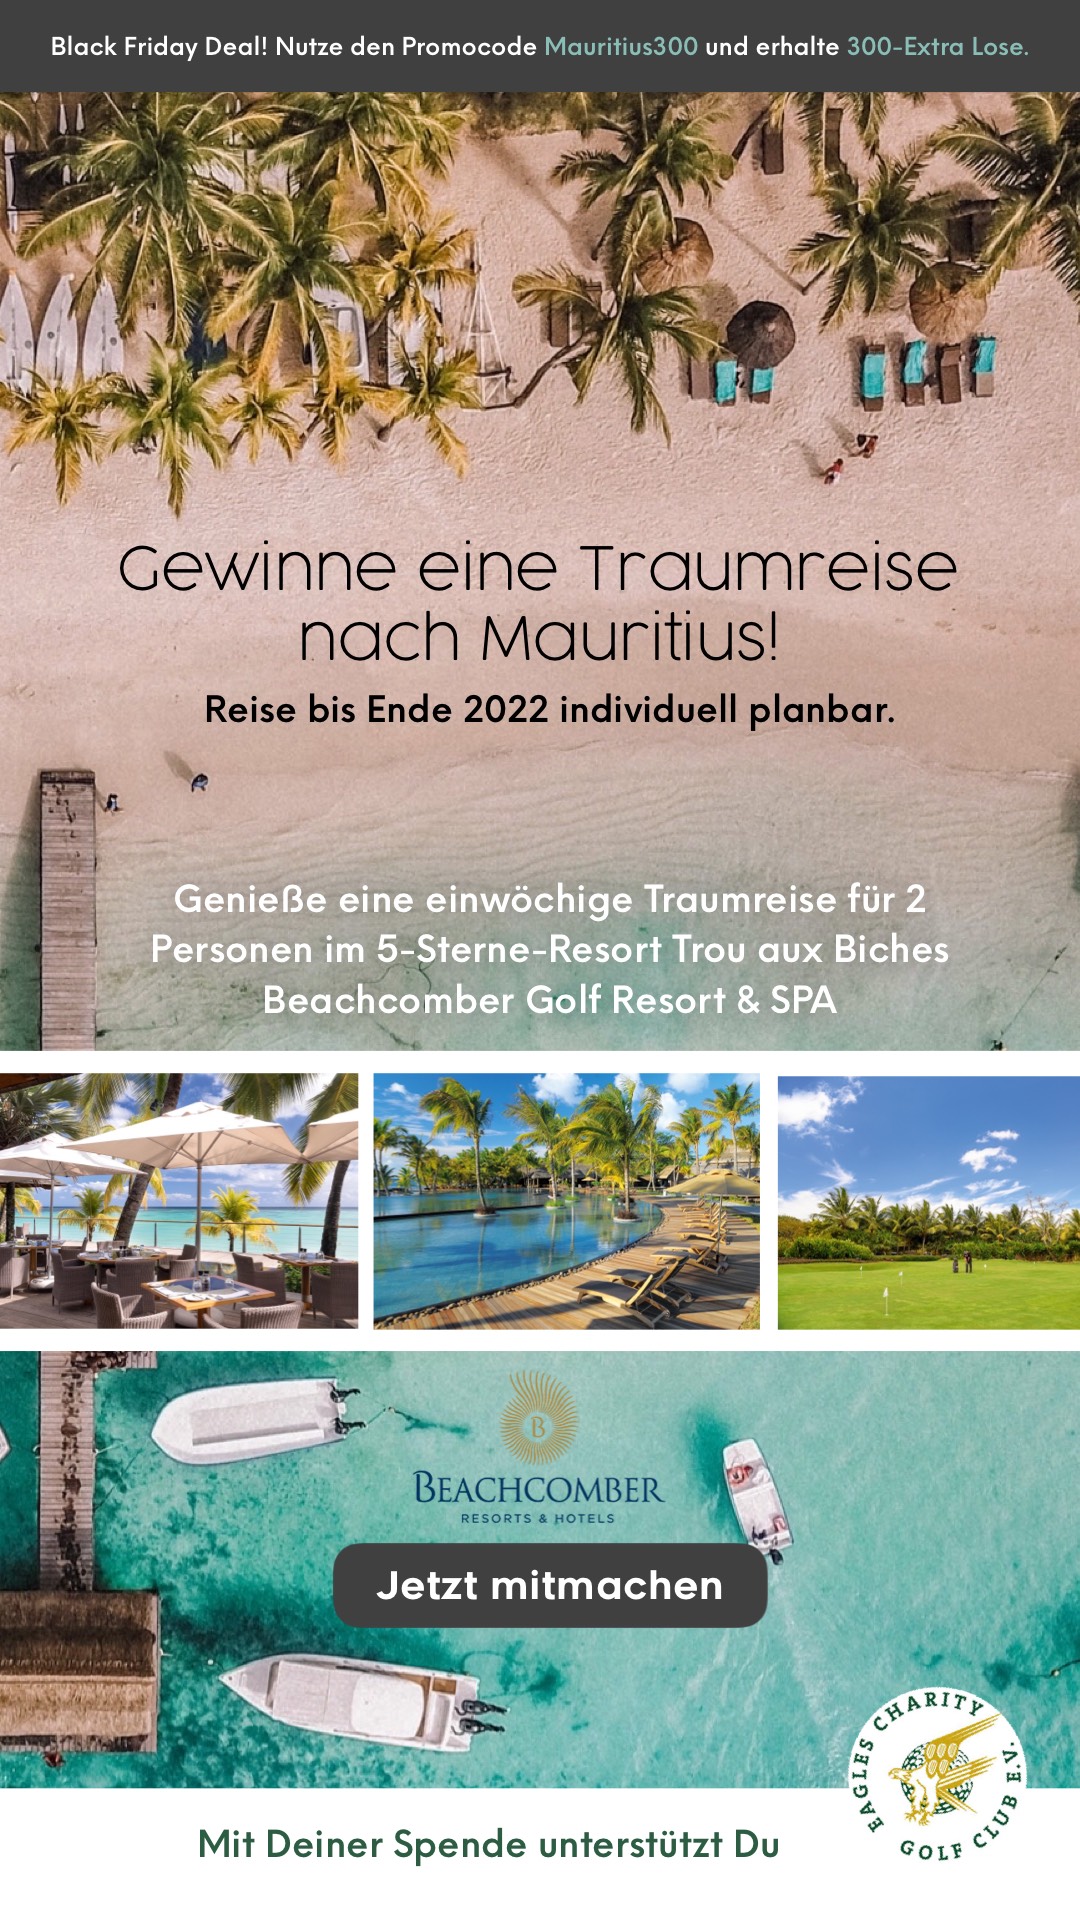 Entspanne 7 N?chte im 5-Sterne Beachcomber Golf Resort & SPA auf Mauritius! Reise bis Ende 2022 individuell planbar. Jede Spende unterst?tzt den EAGLES Charity e.V.